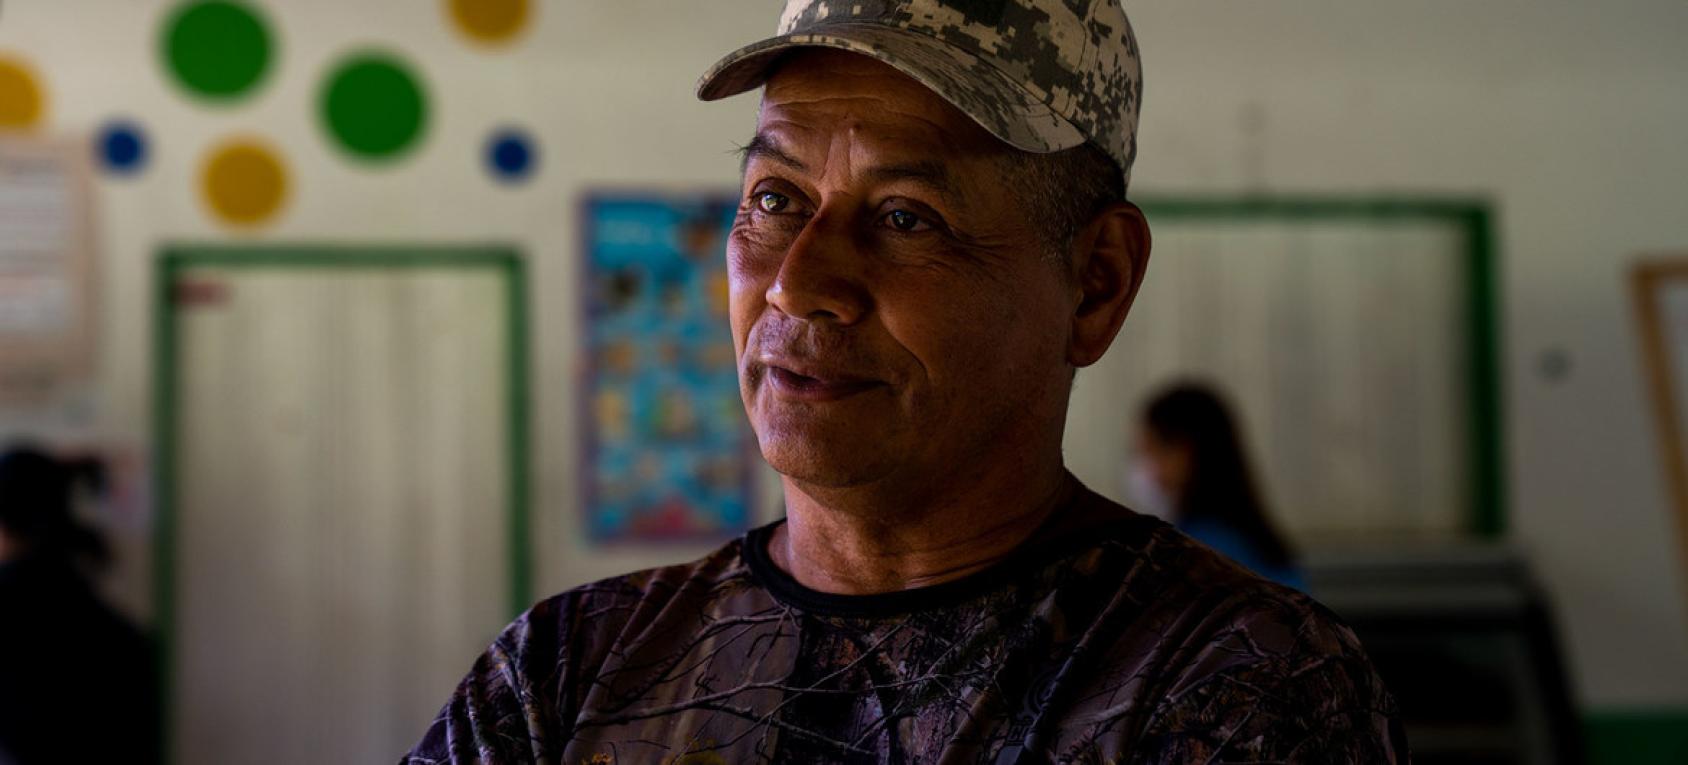 لقطة لأحد أفراد القوات المسلحة الثورية الكولومبية السابق.